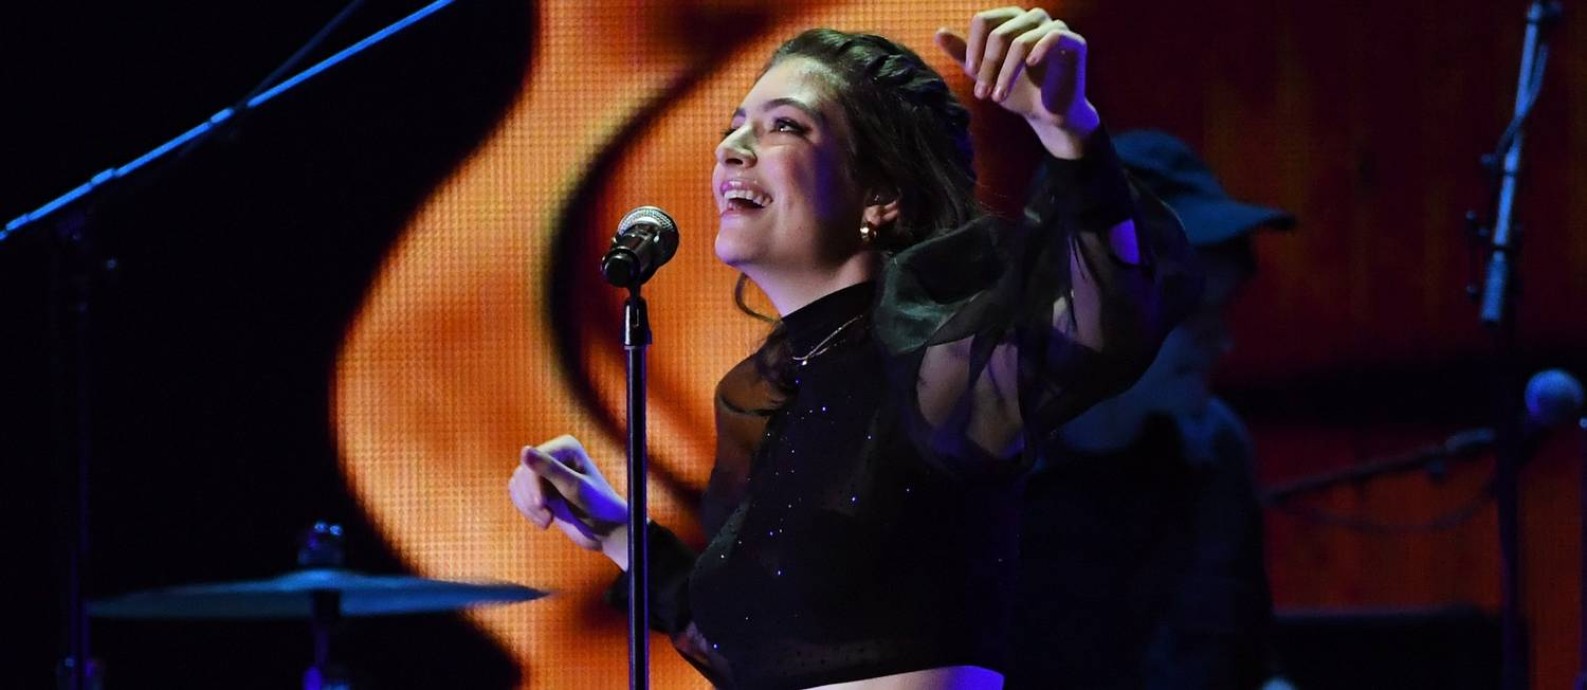 Lorde ao vivo em Las Vegas, em um show de sua “Melodrama tour”
Foto: KEVIN WINTER / Agência O Globo